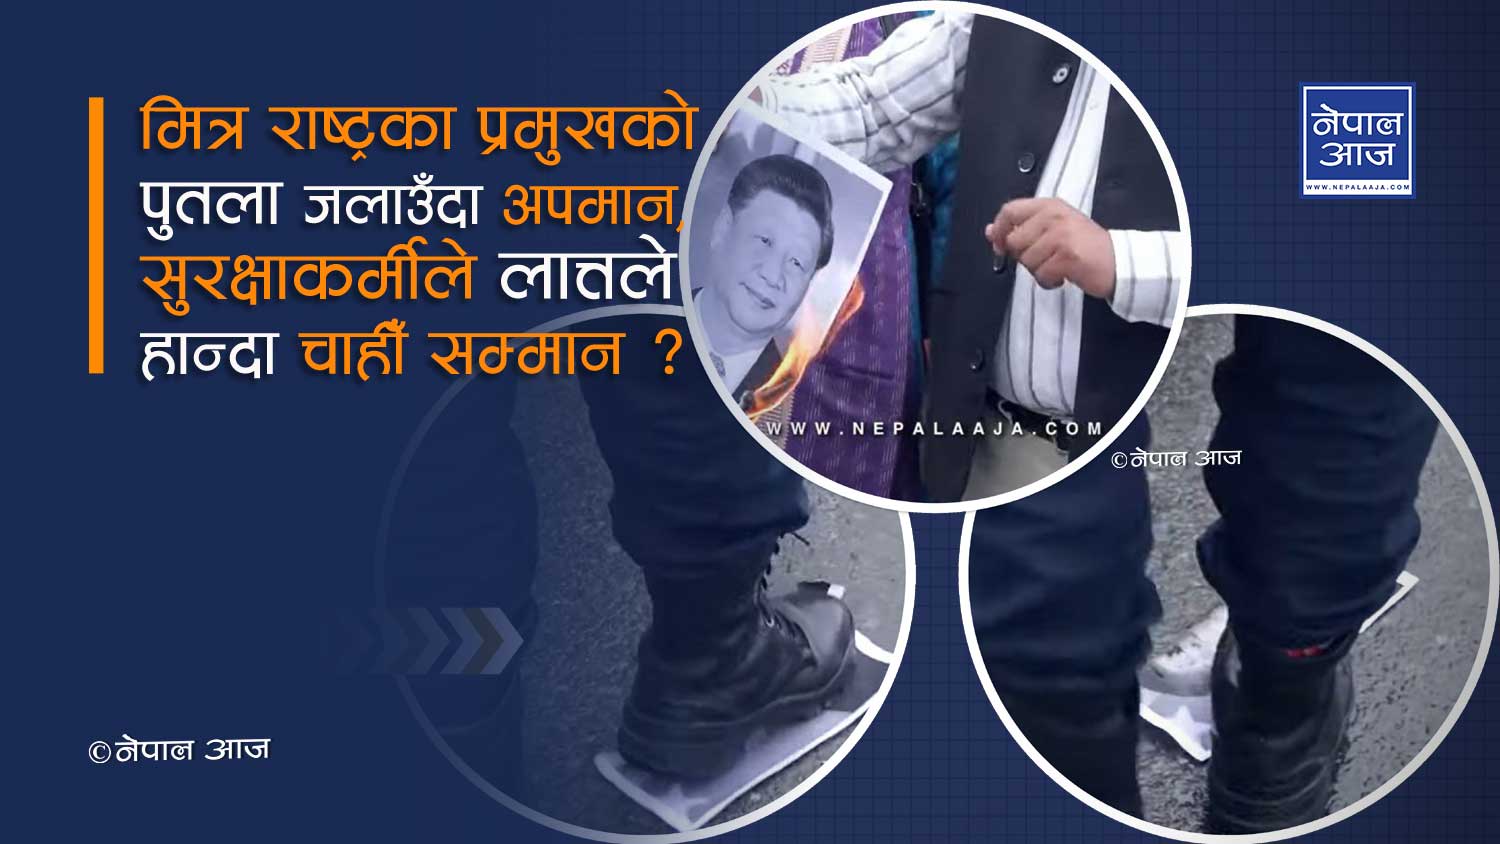 नेपाल प्रहरीद्वारा चीनियाँ राष्ट्रपतिको अपमान !